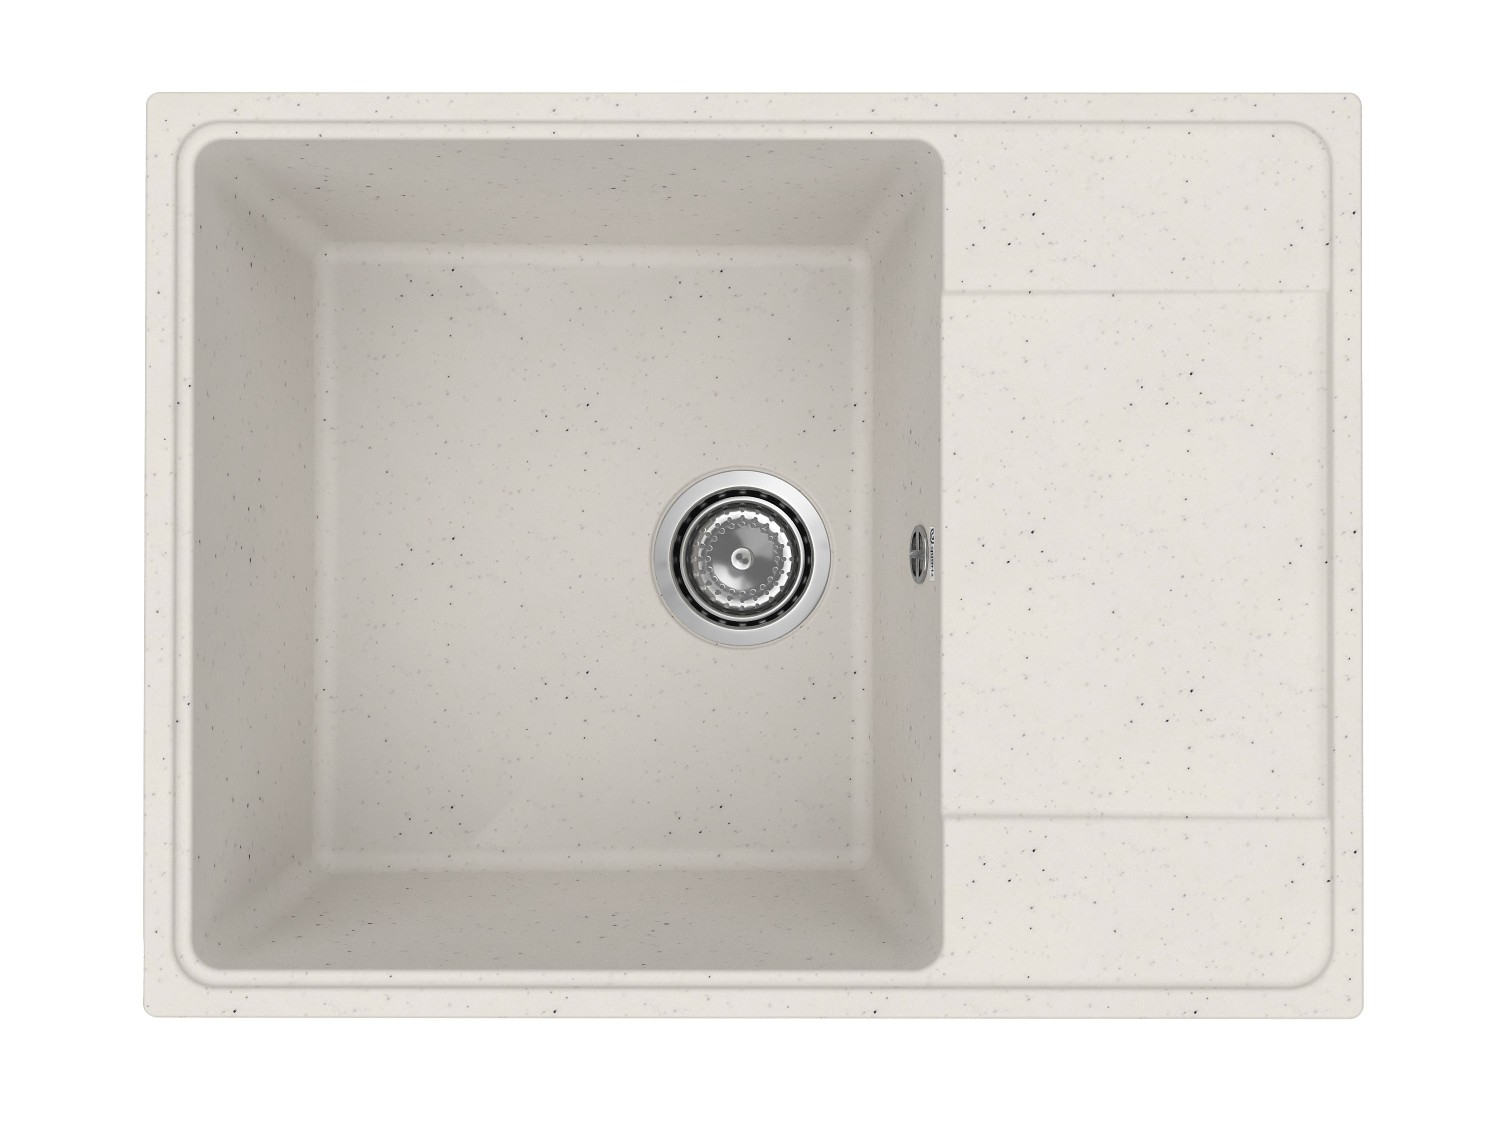 Врезная кухонная мойка из искусственного камня, ELEFANT Standart 650-1, цвет Белый камень (белая)